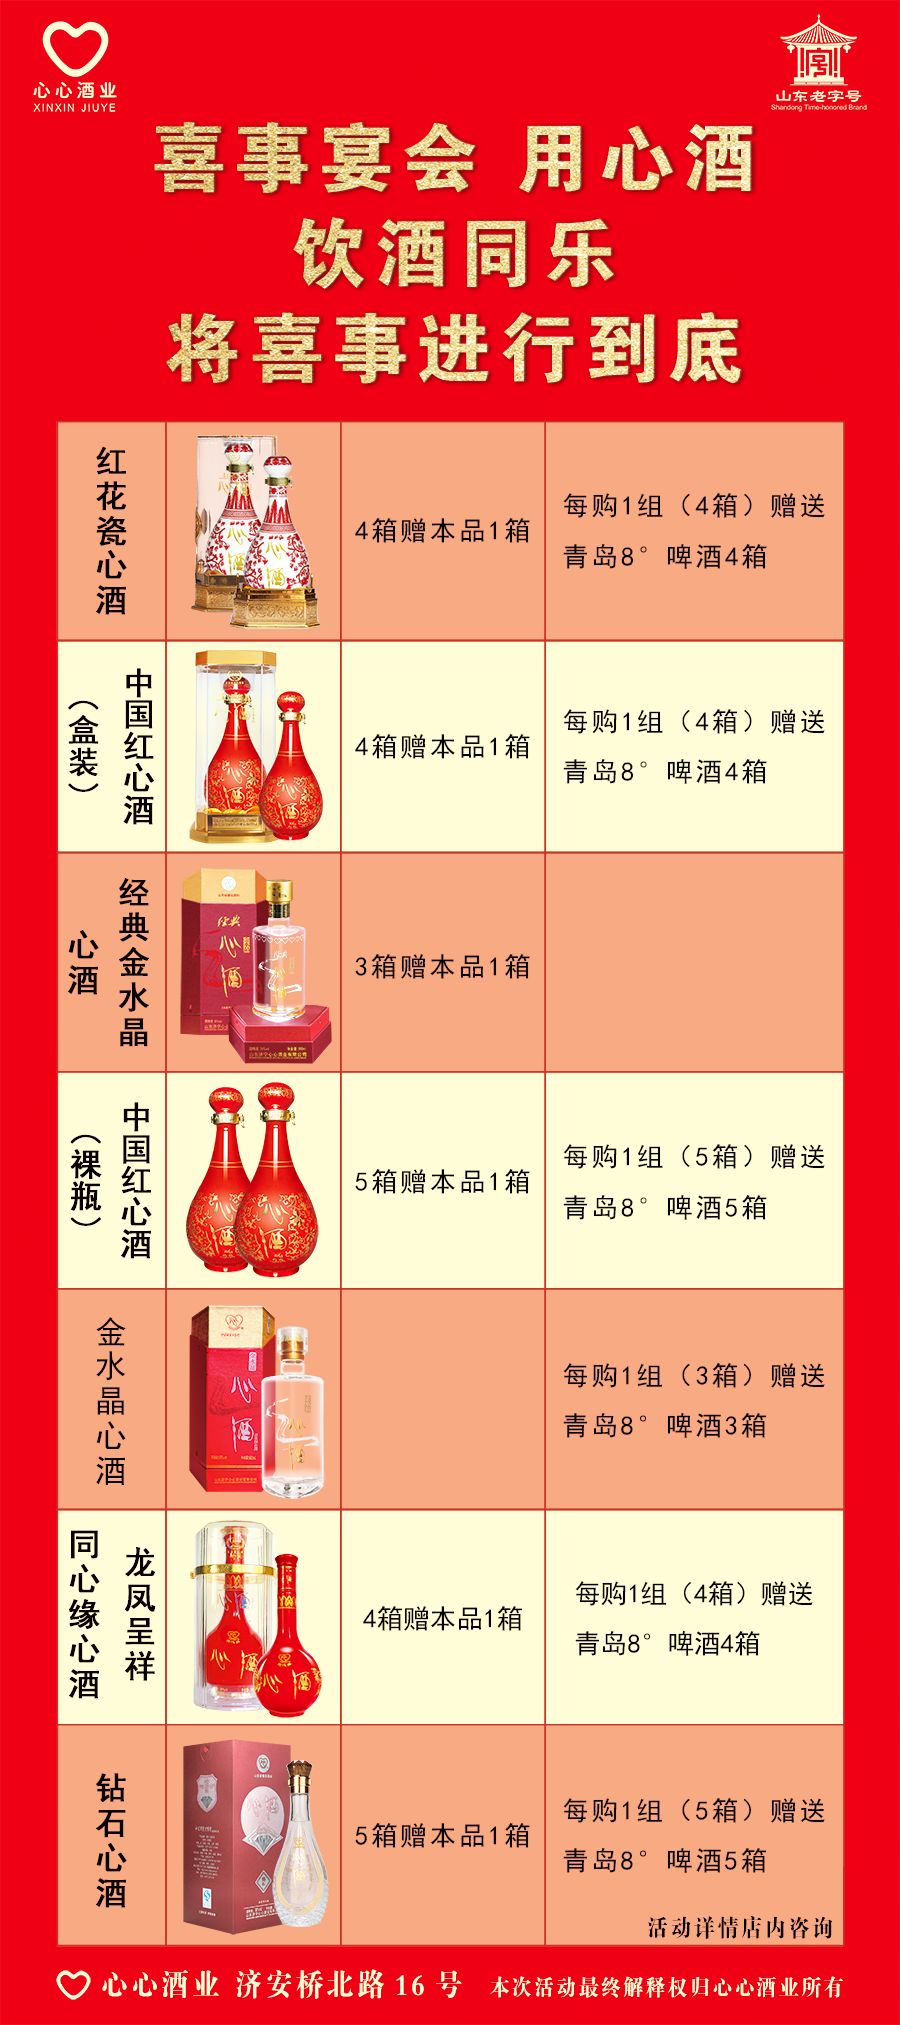 喜事接踵而来的季节,隆重推出:中国红心酒,红花瓷心酒,金水晶心酒